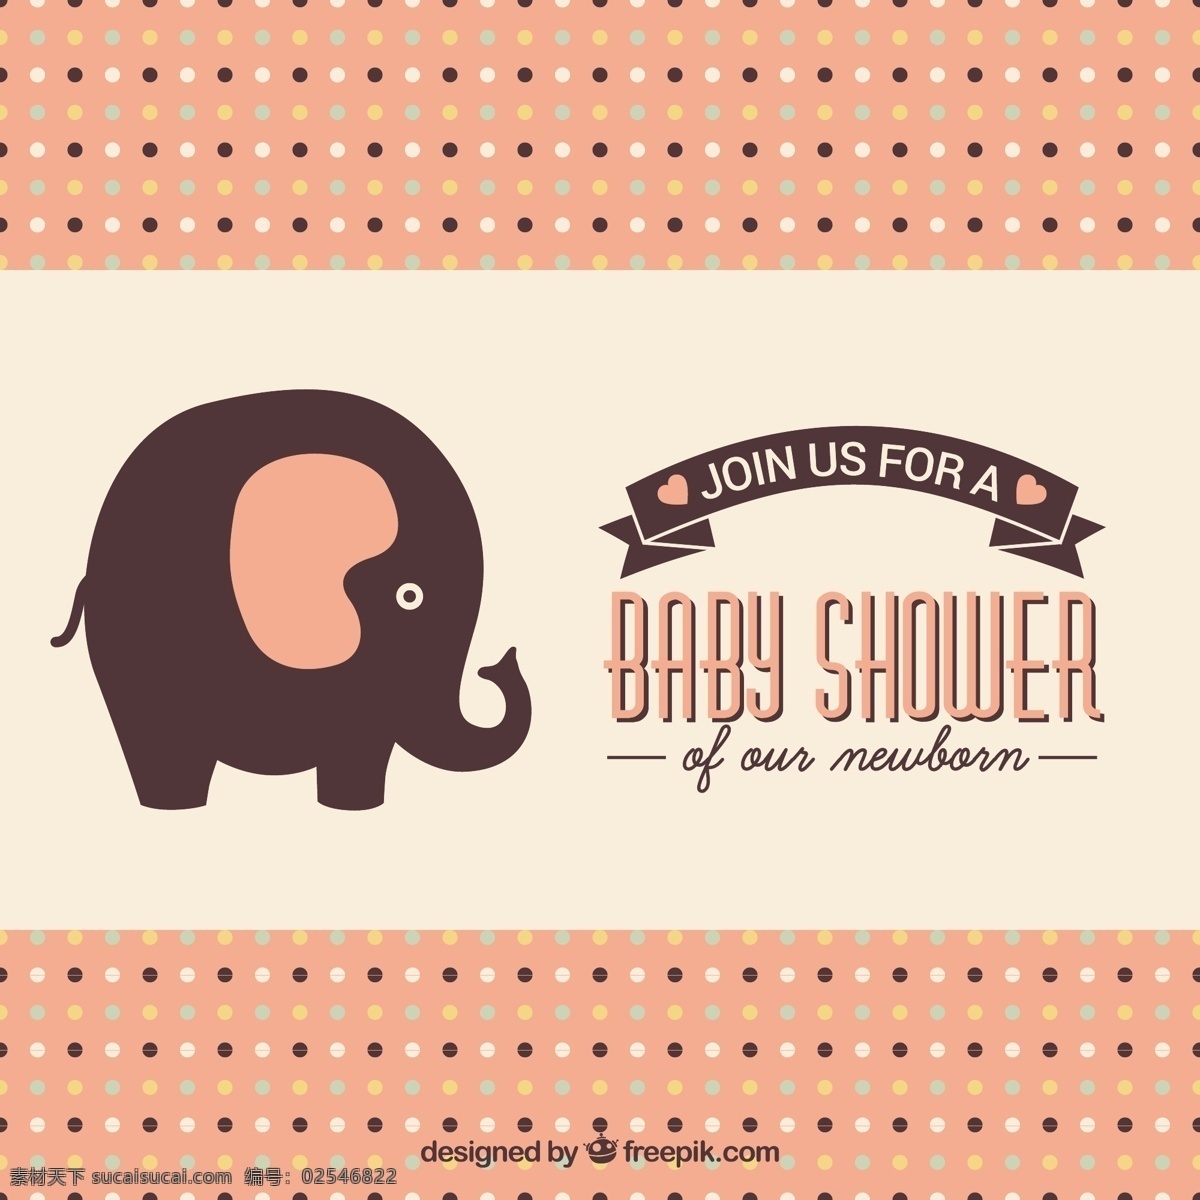 可爱 婴儿 淋浴 卡片 邀请 派对 婴儿淋浴 邀请卡 庆祝 大象 派对邀请 婴儿卡 新生 出生